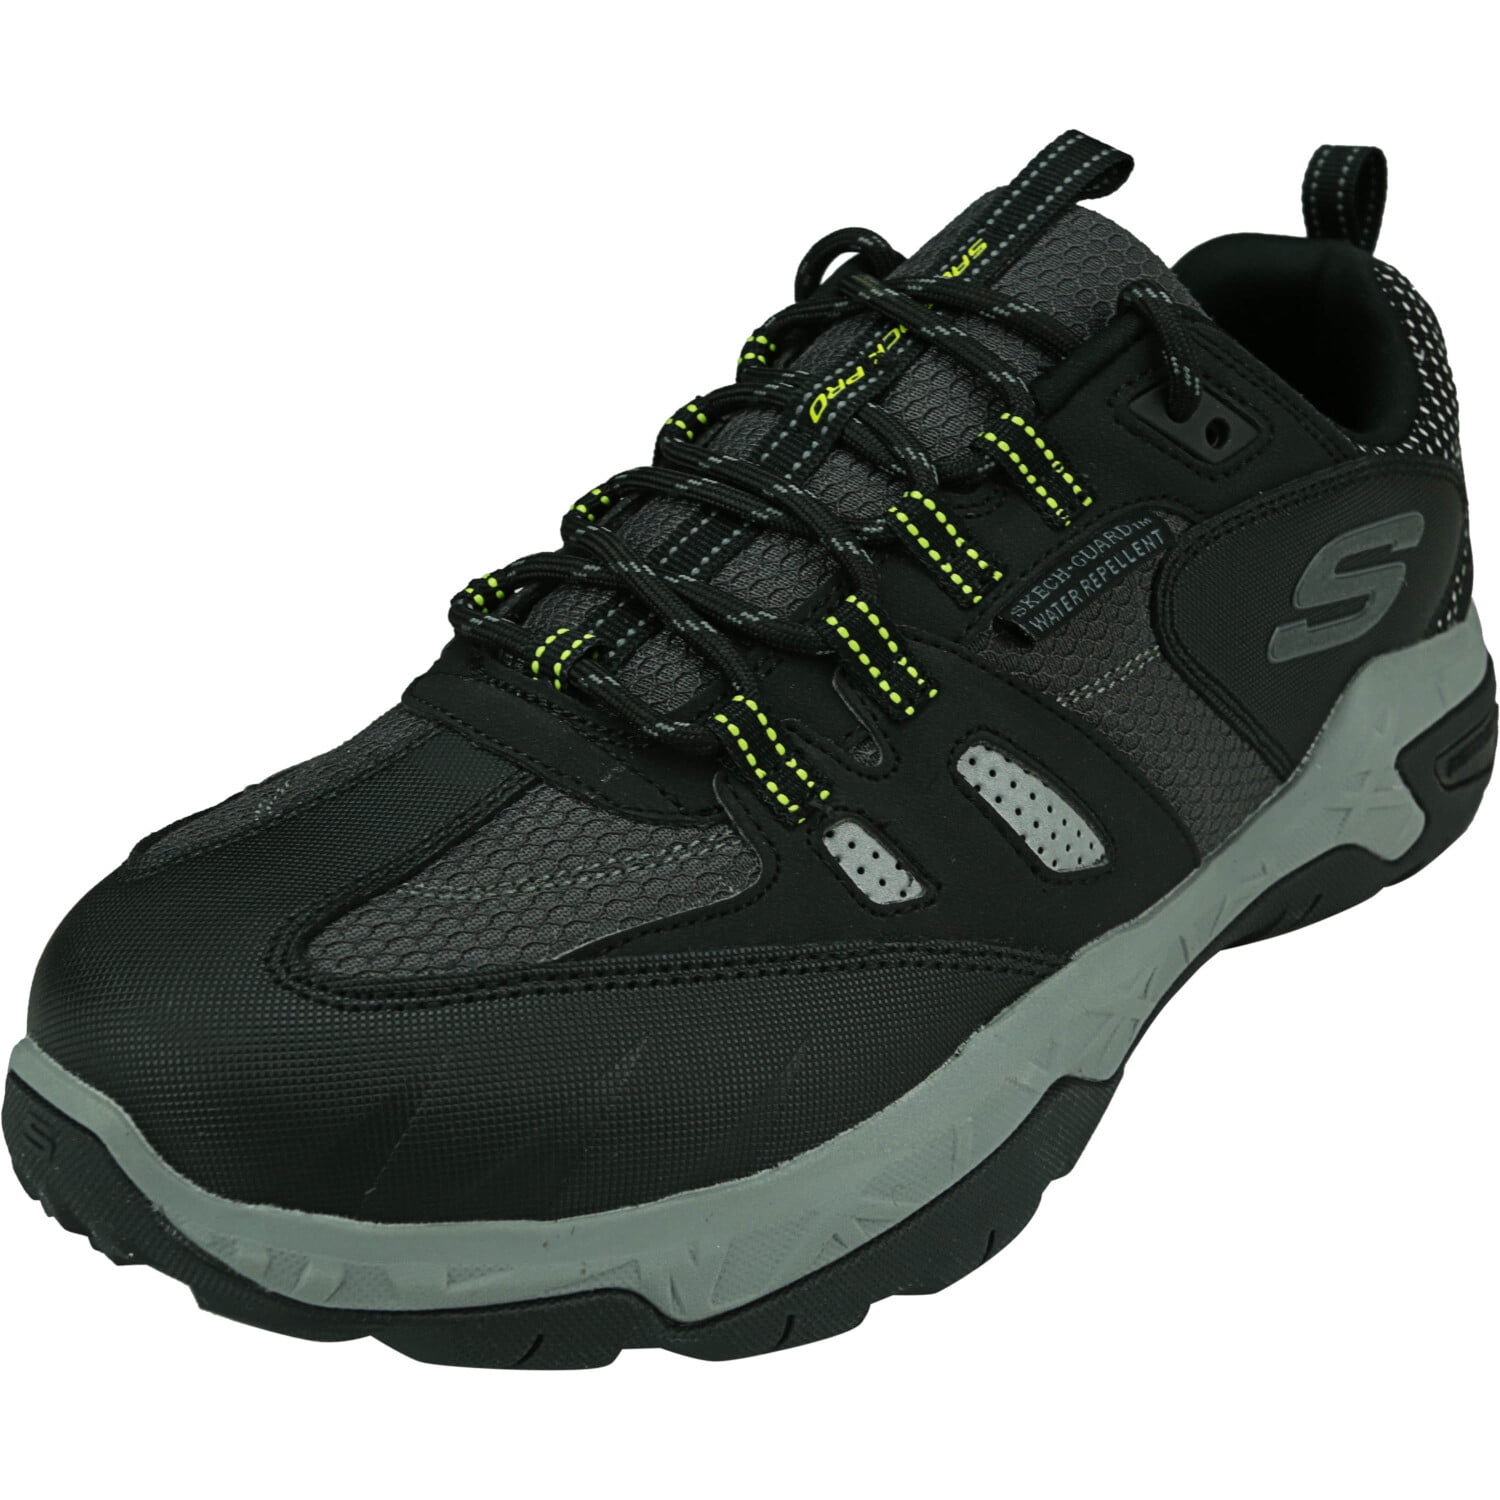 Skechers Men's Sawback Pro Black / Gray Ankle-High Trail Running - 10M ...